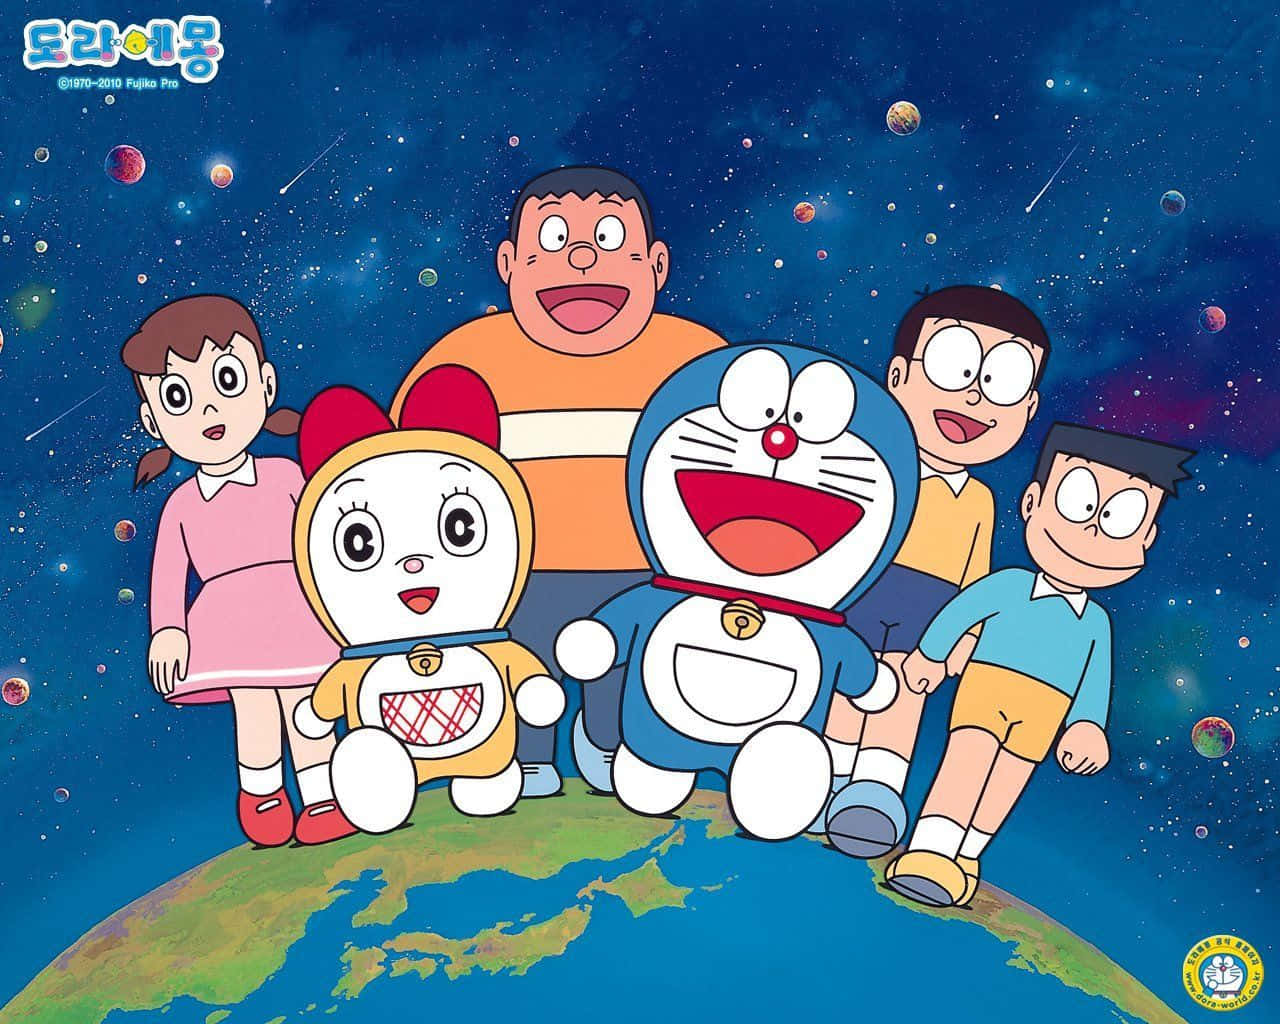 "Explore Wonders With Doraemon"